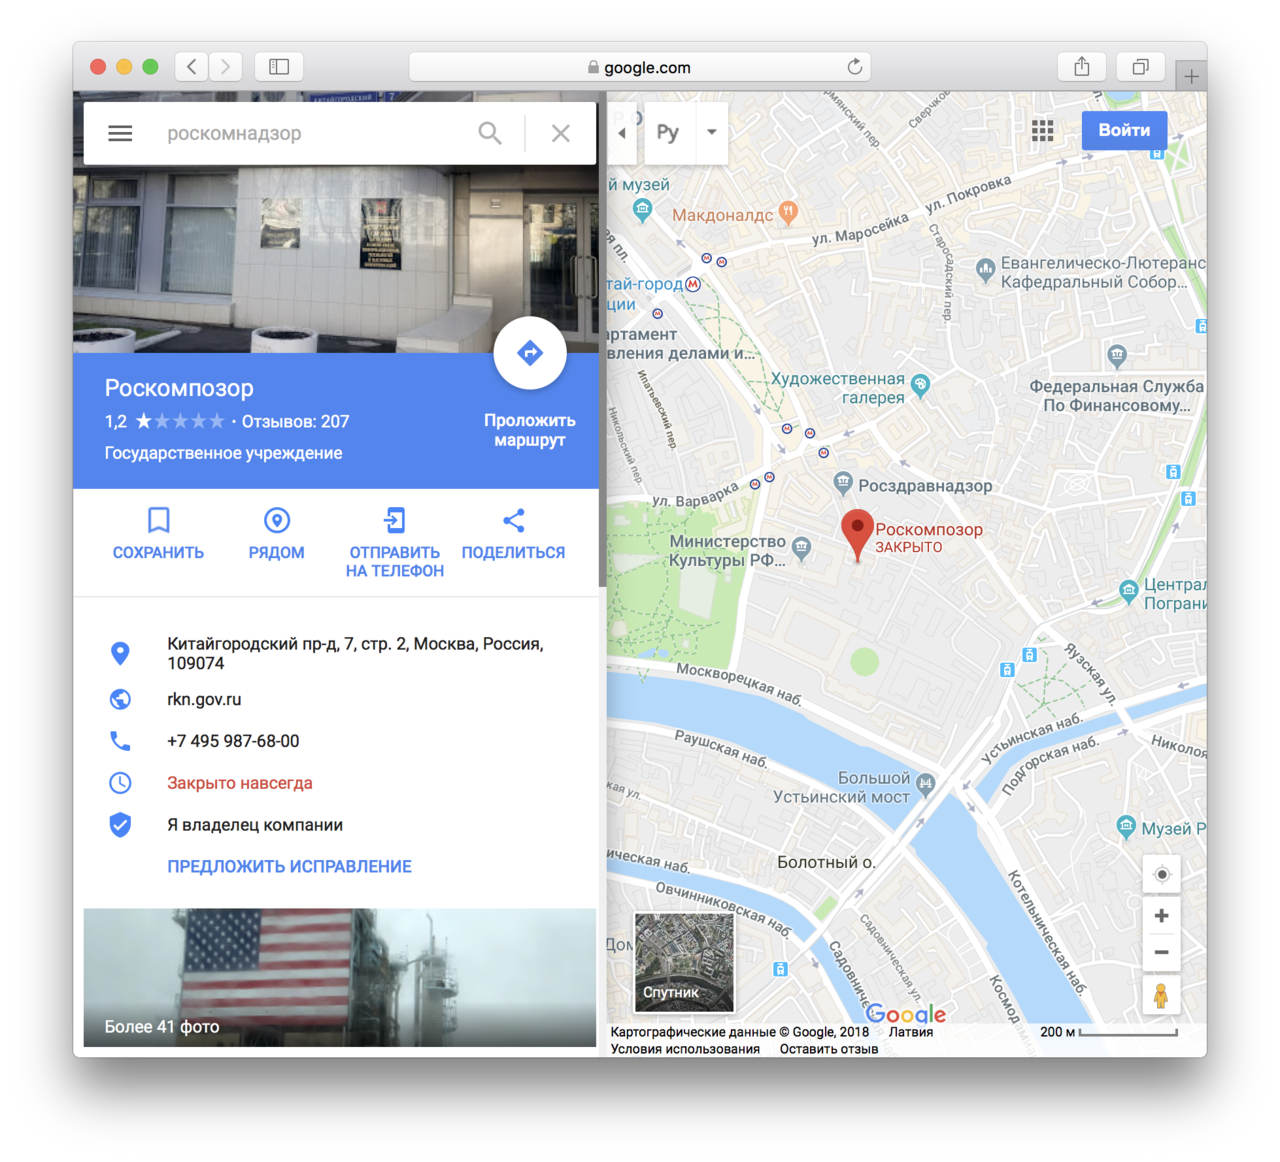 Пользователи атаковали Роскомнадзор в Google Maps: ведомство переименовали в Роскомпозор и «закрыли навсегда»